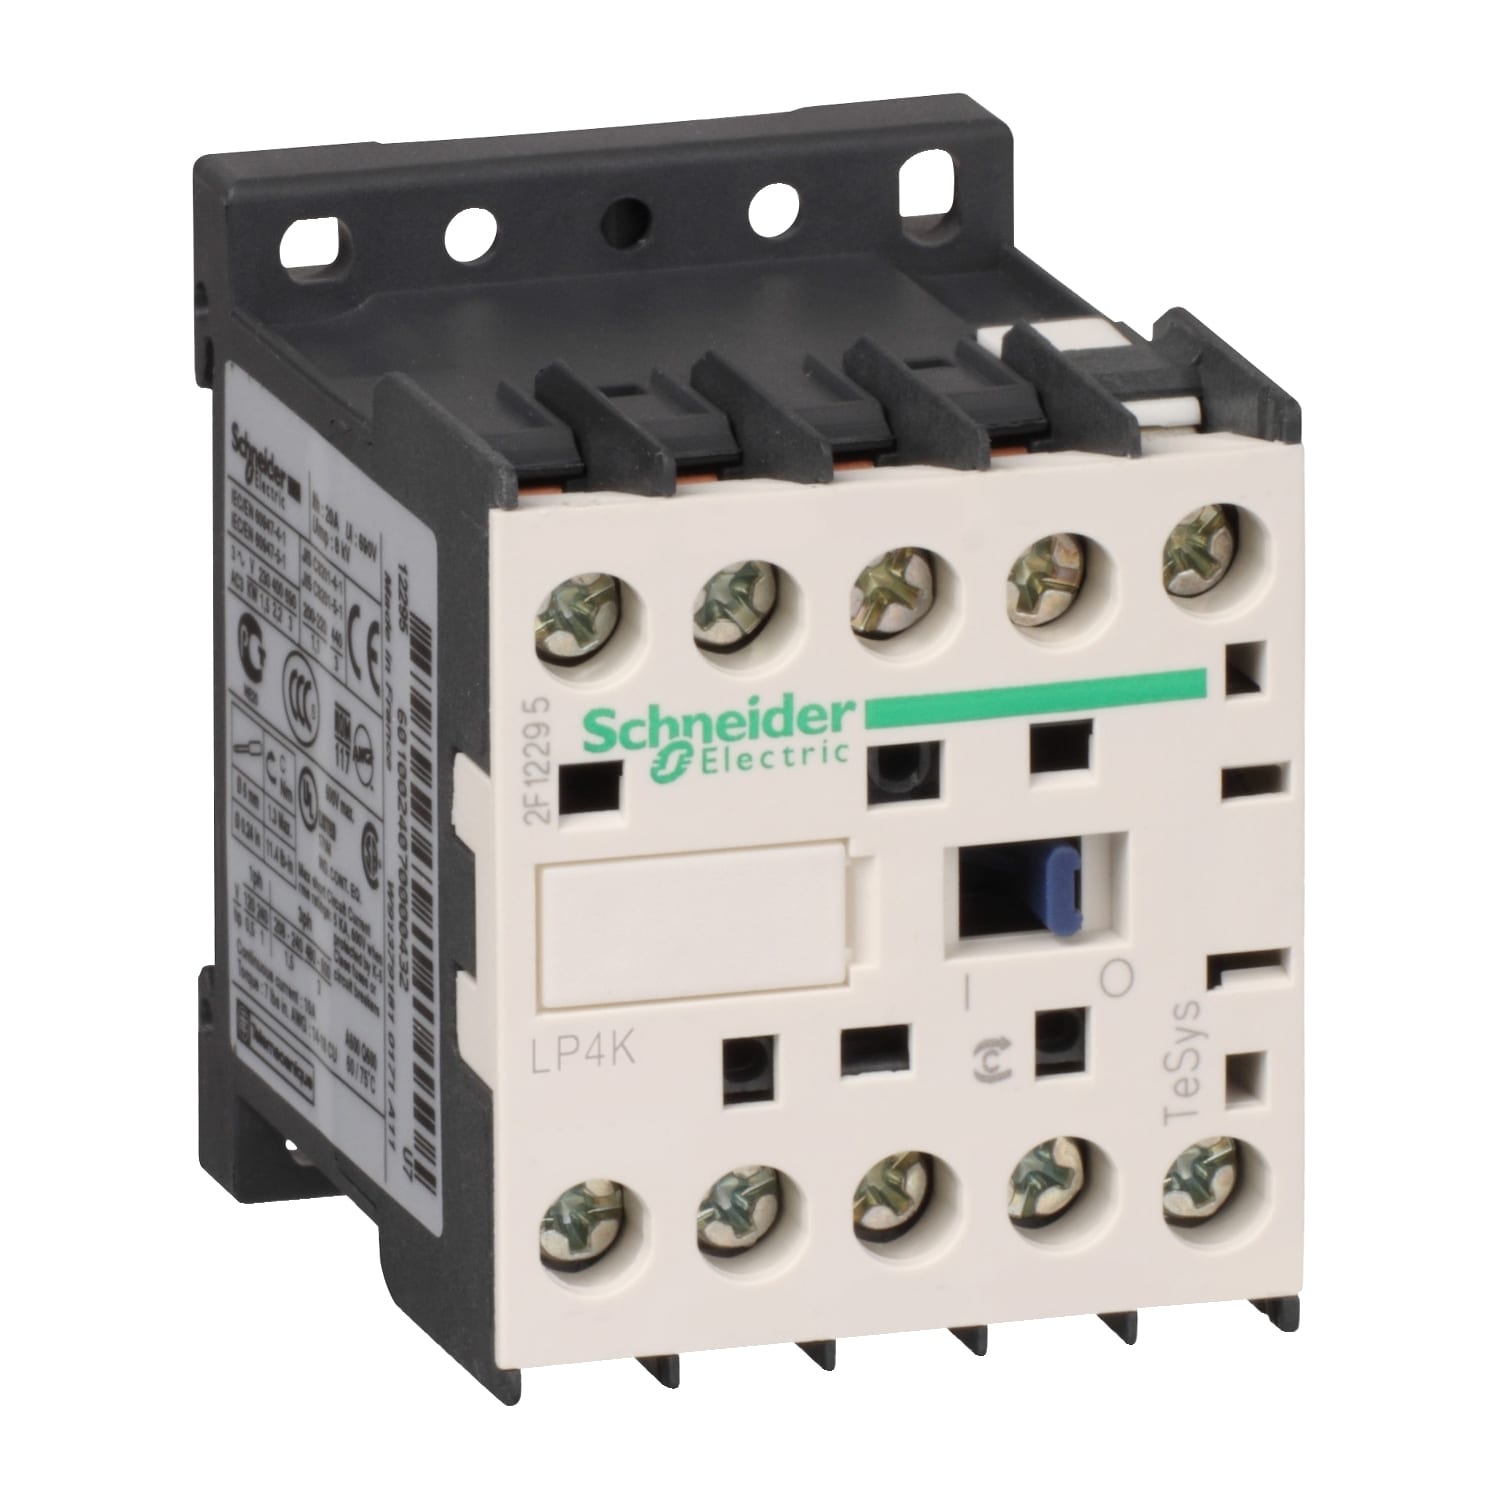 Schneider Electric - TeSys LP4K - contacteur - 3P - AC-3 440V - 12A - bobine 24Vcc